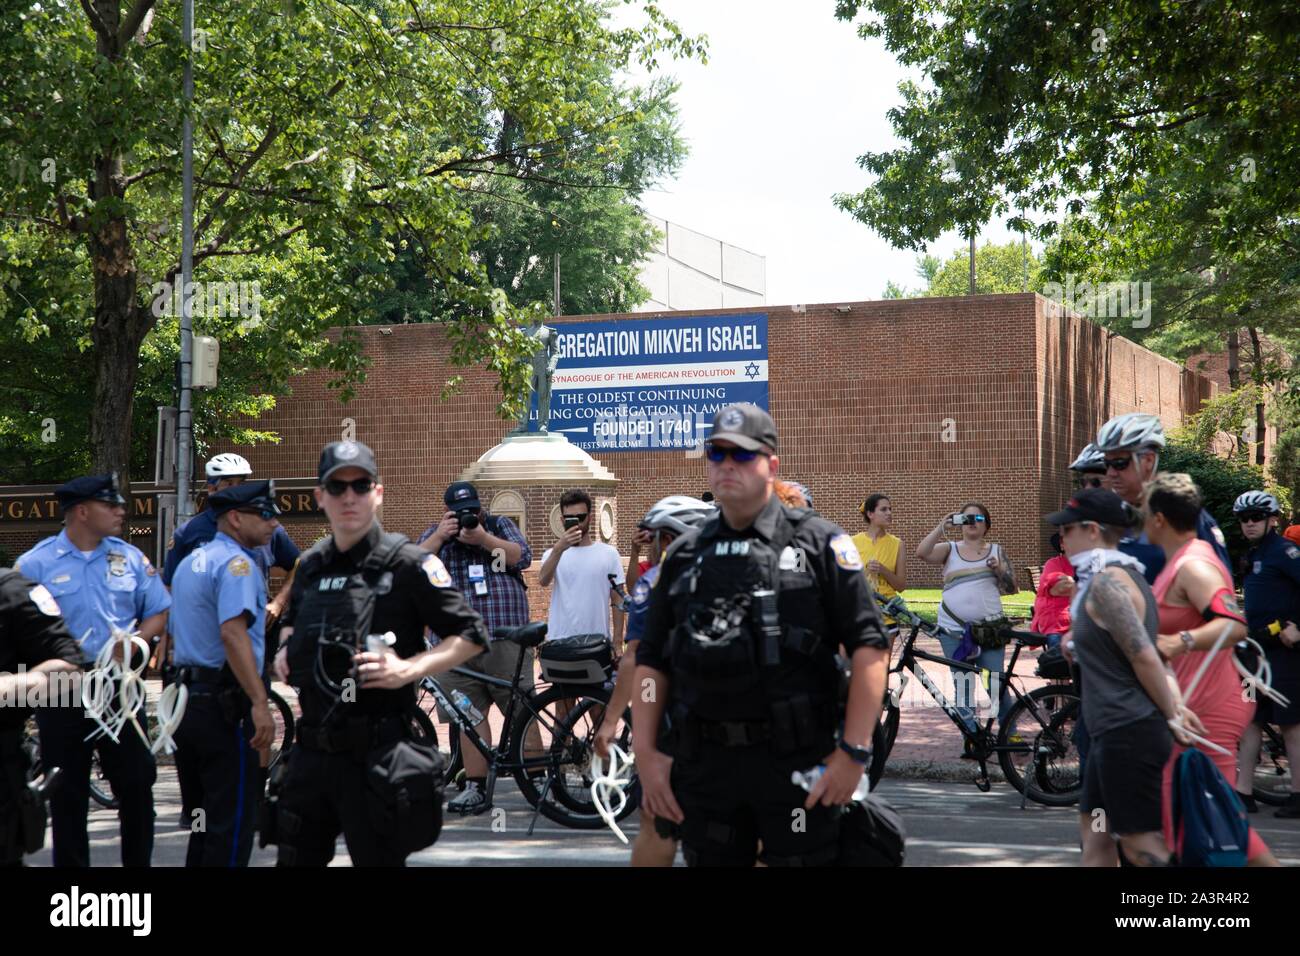 Juli 4, 2019 - Mitglieder der jüdischen Aktivist Gruppe Nie Wieder ist jetzt der 4. Juli Parade an der Independence Hall stören die contiditions an Immigrant in Haftanstalten in den Vereinigten Staaten zu protestieren. Philadelphia, PA USA. Stockfoto